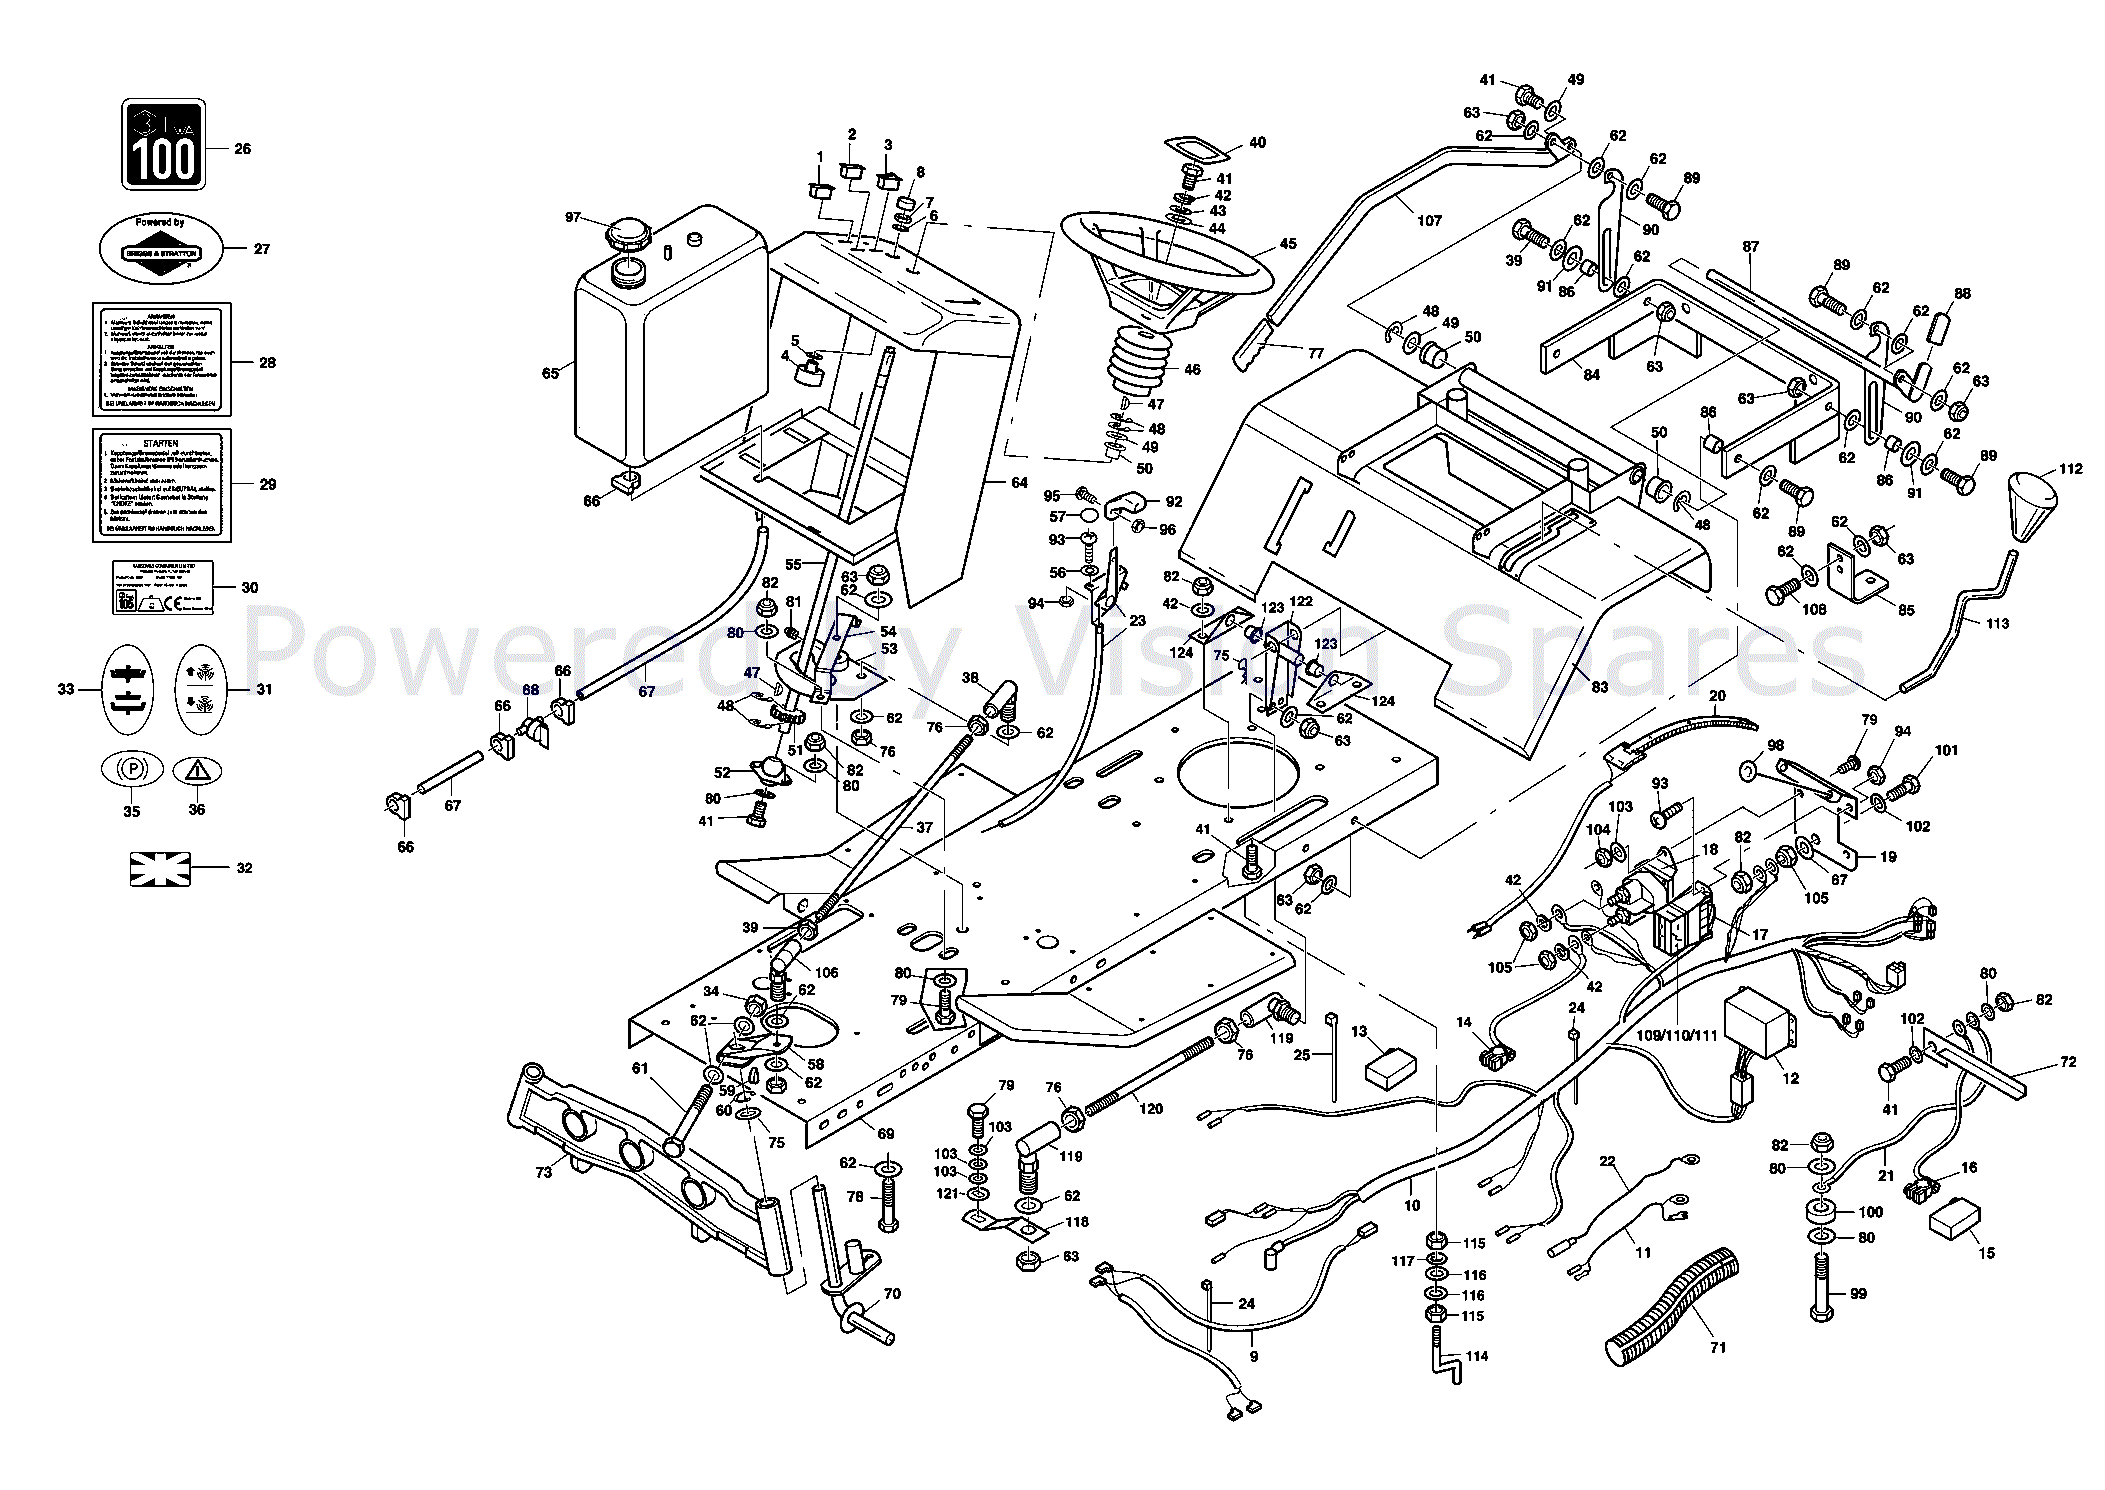 westwood garden tractor wiring diagram - Wiring Diagram